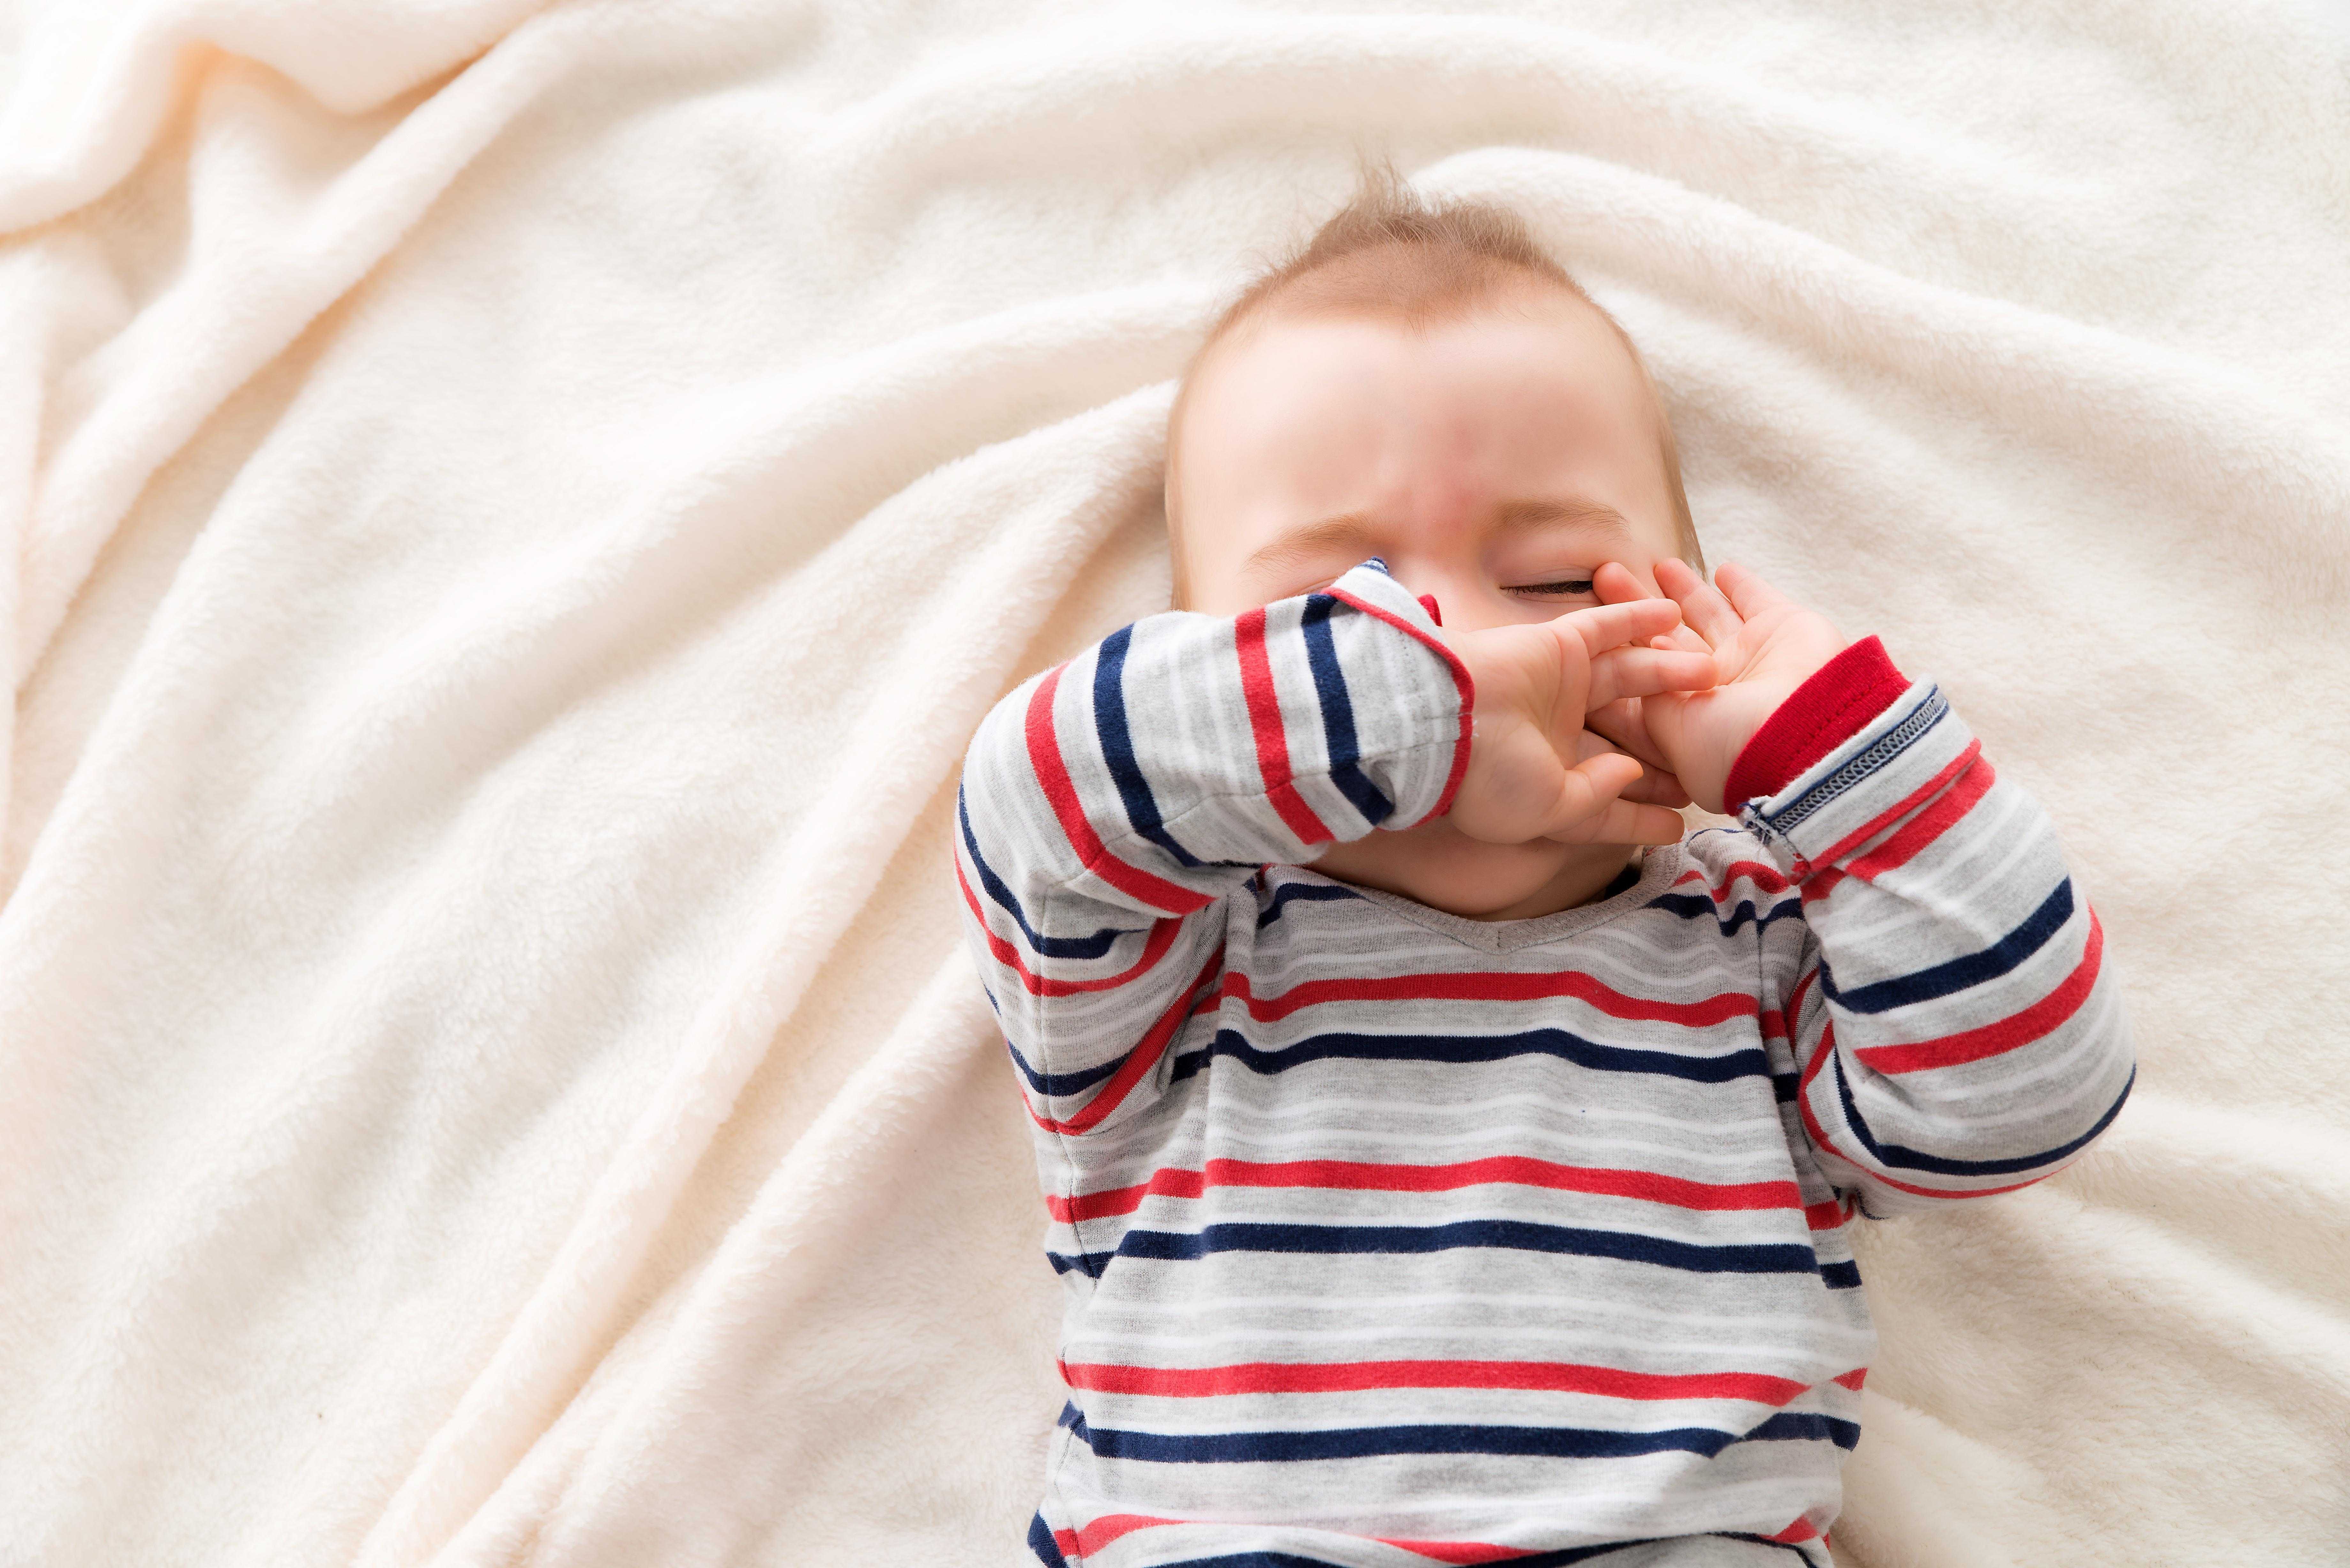 Как уложить ребенка спать…
оставшись при этом в трезвом уме и твердой памяти